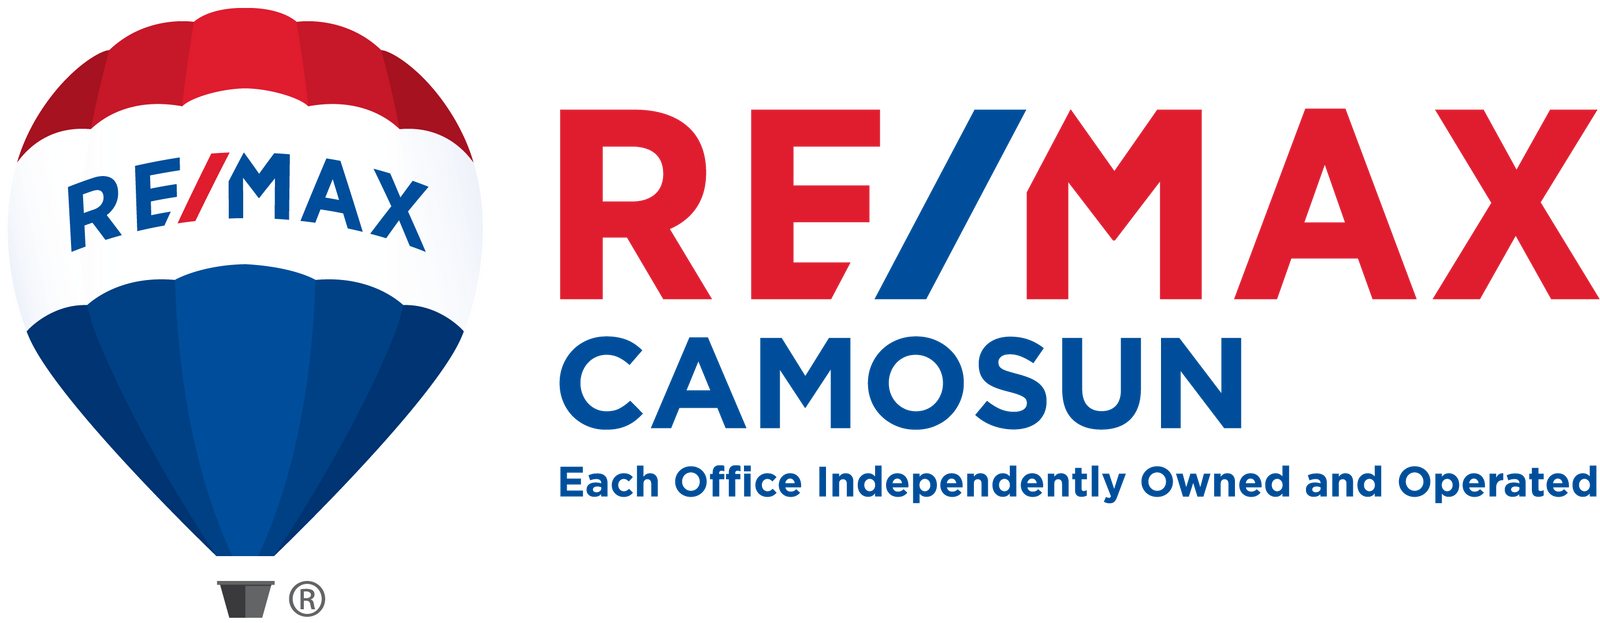 Re/Max Camosun Logo